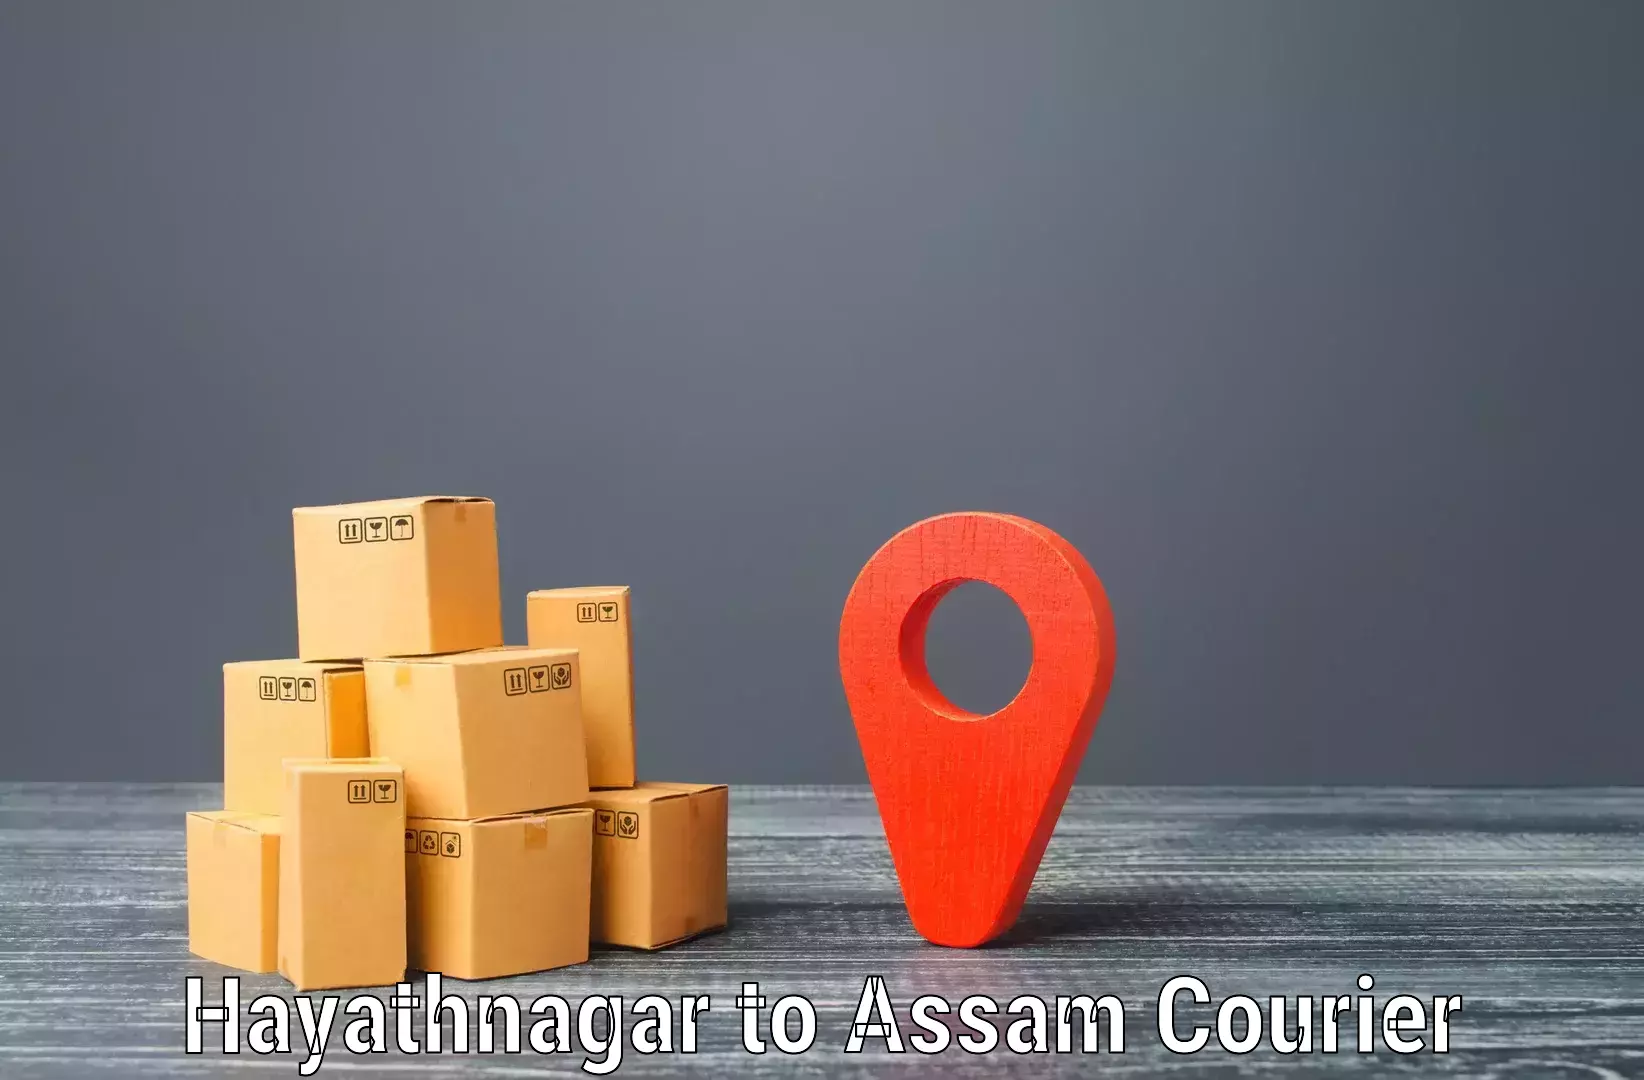 Weekend courier service Hayathnagar to Lala Assam